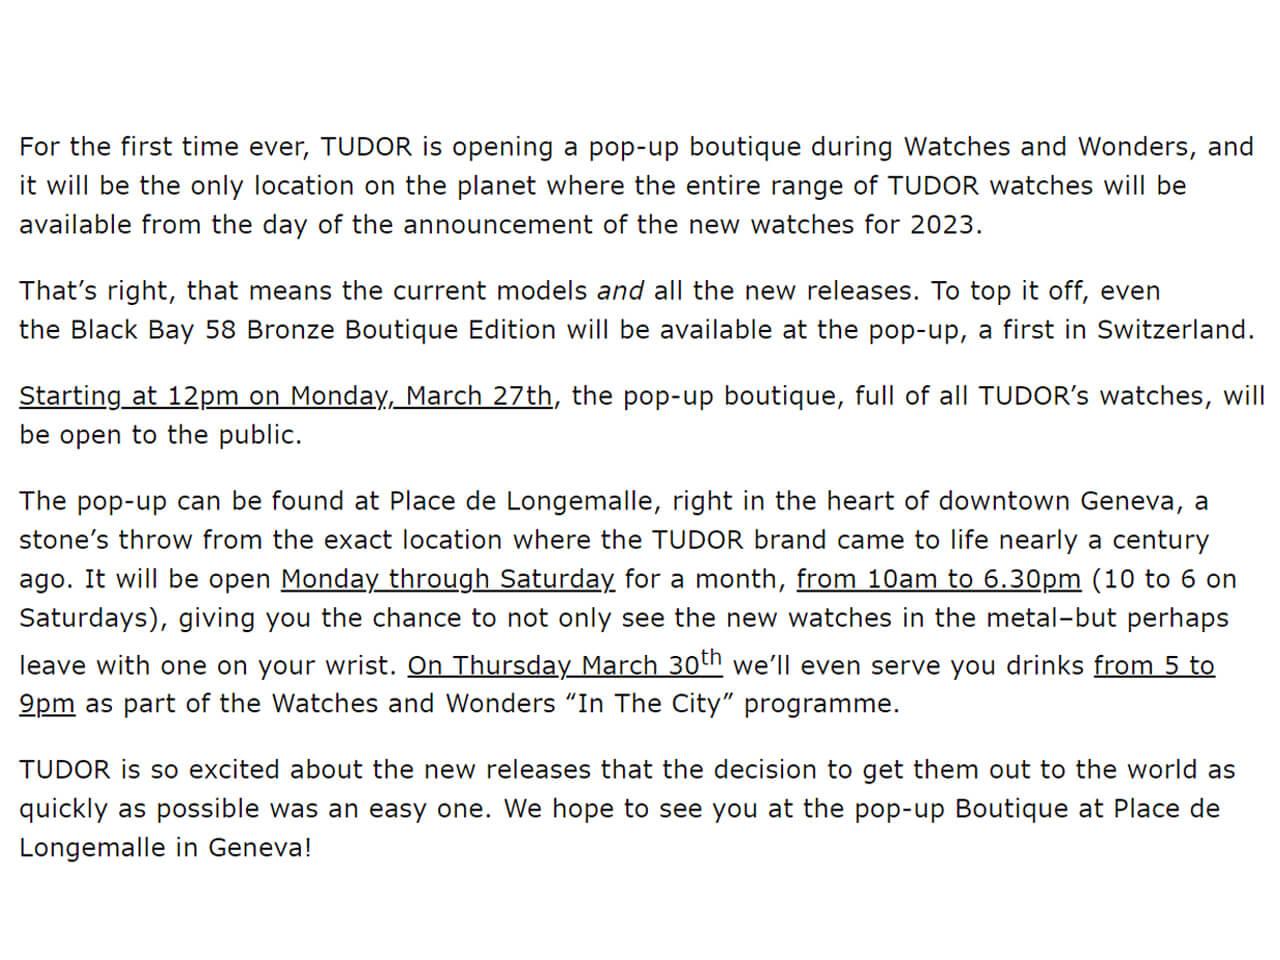 TUDORは史上初めて、Watches and Wondersの期間中にポップアップブティックをオープン